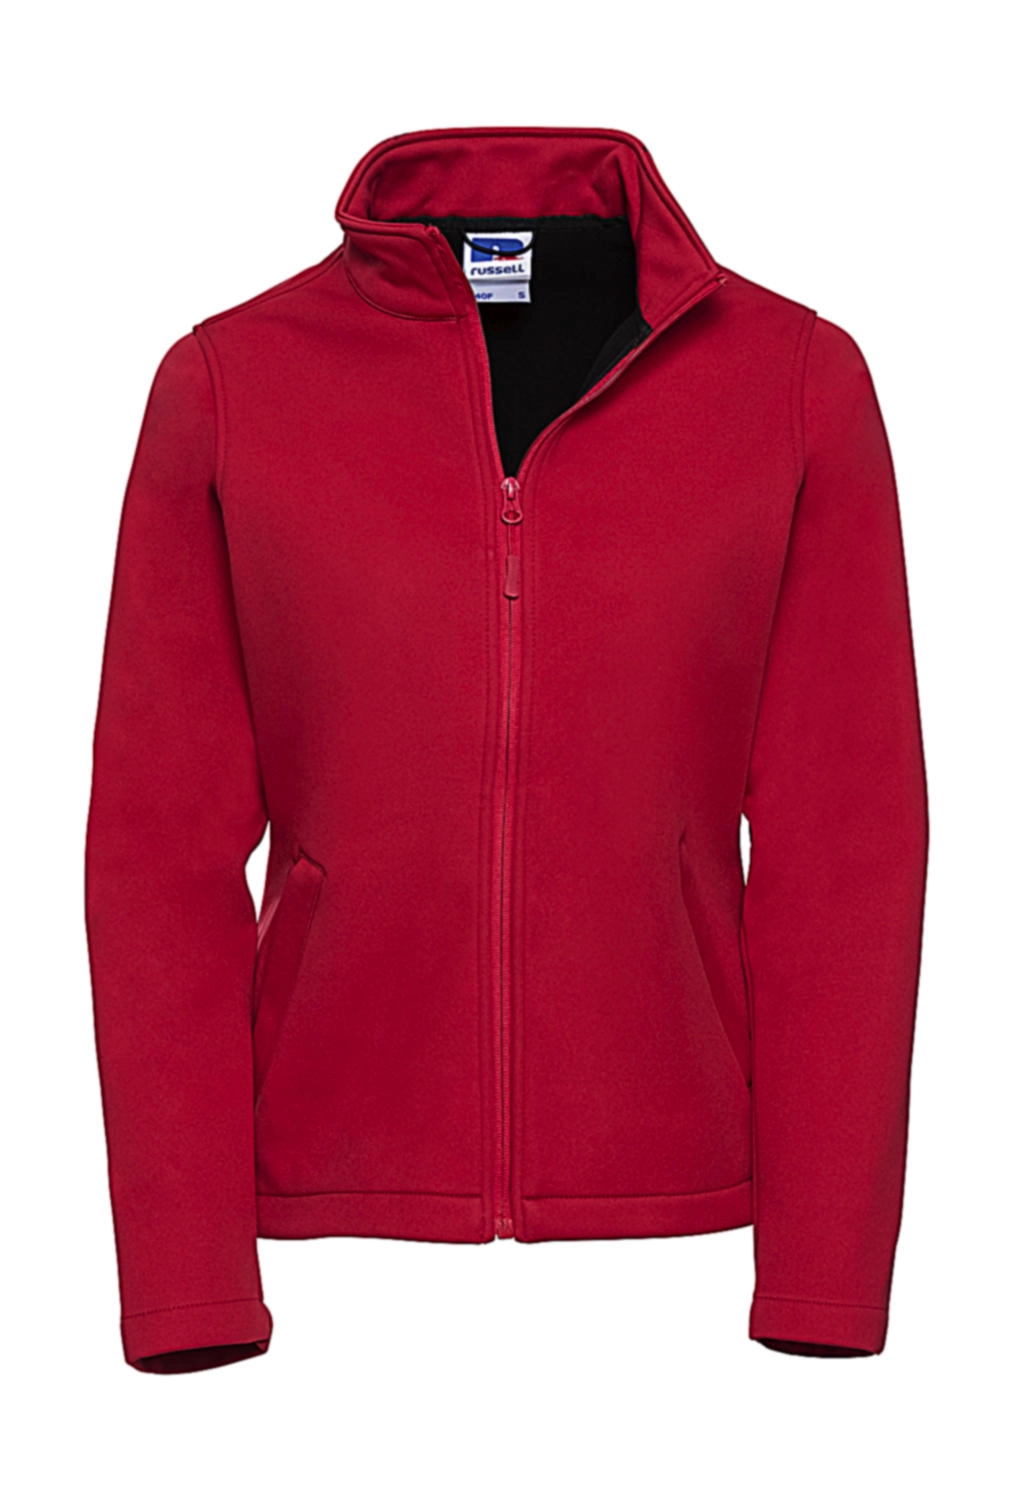 Ladies` Smart Softshell Jacket zum Besticken und Bedrucken in der Farbe Classic Red mit Ihren Logo, Schriftzug oder Motiv.